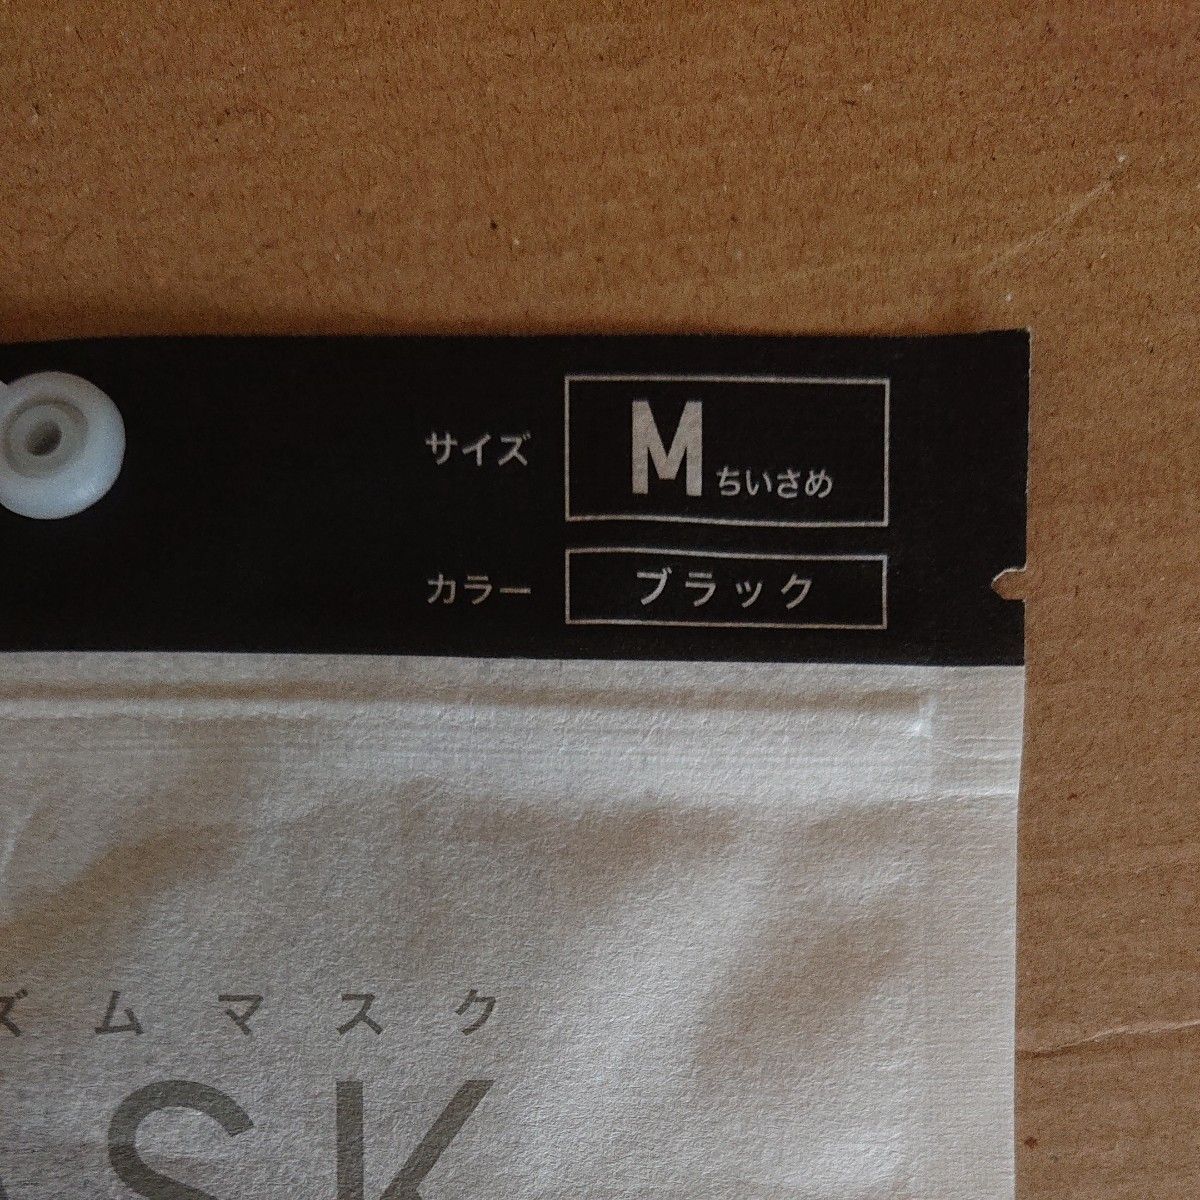 ユニクロ エアリズムマスク M  ブラック  2袋